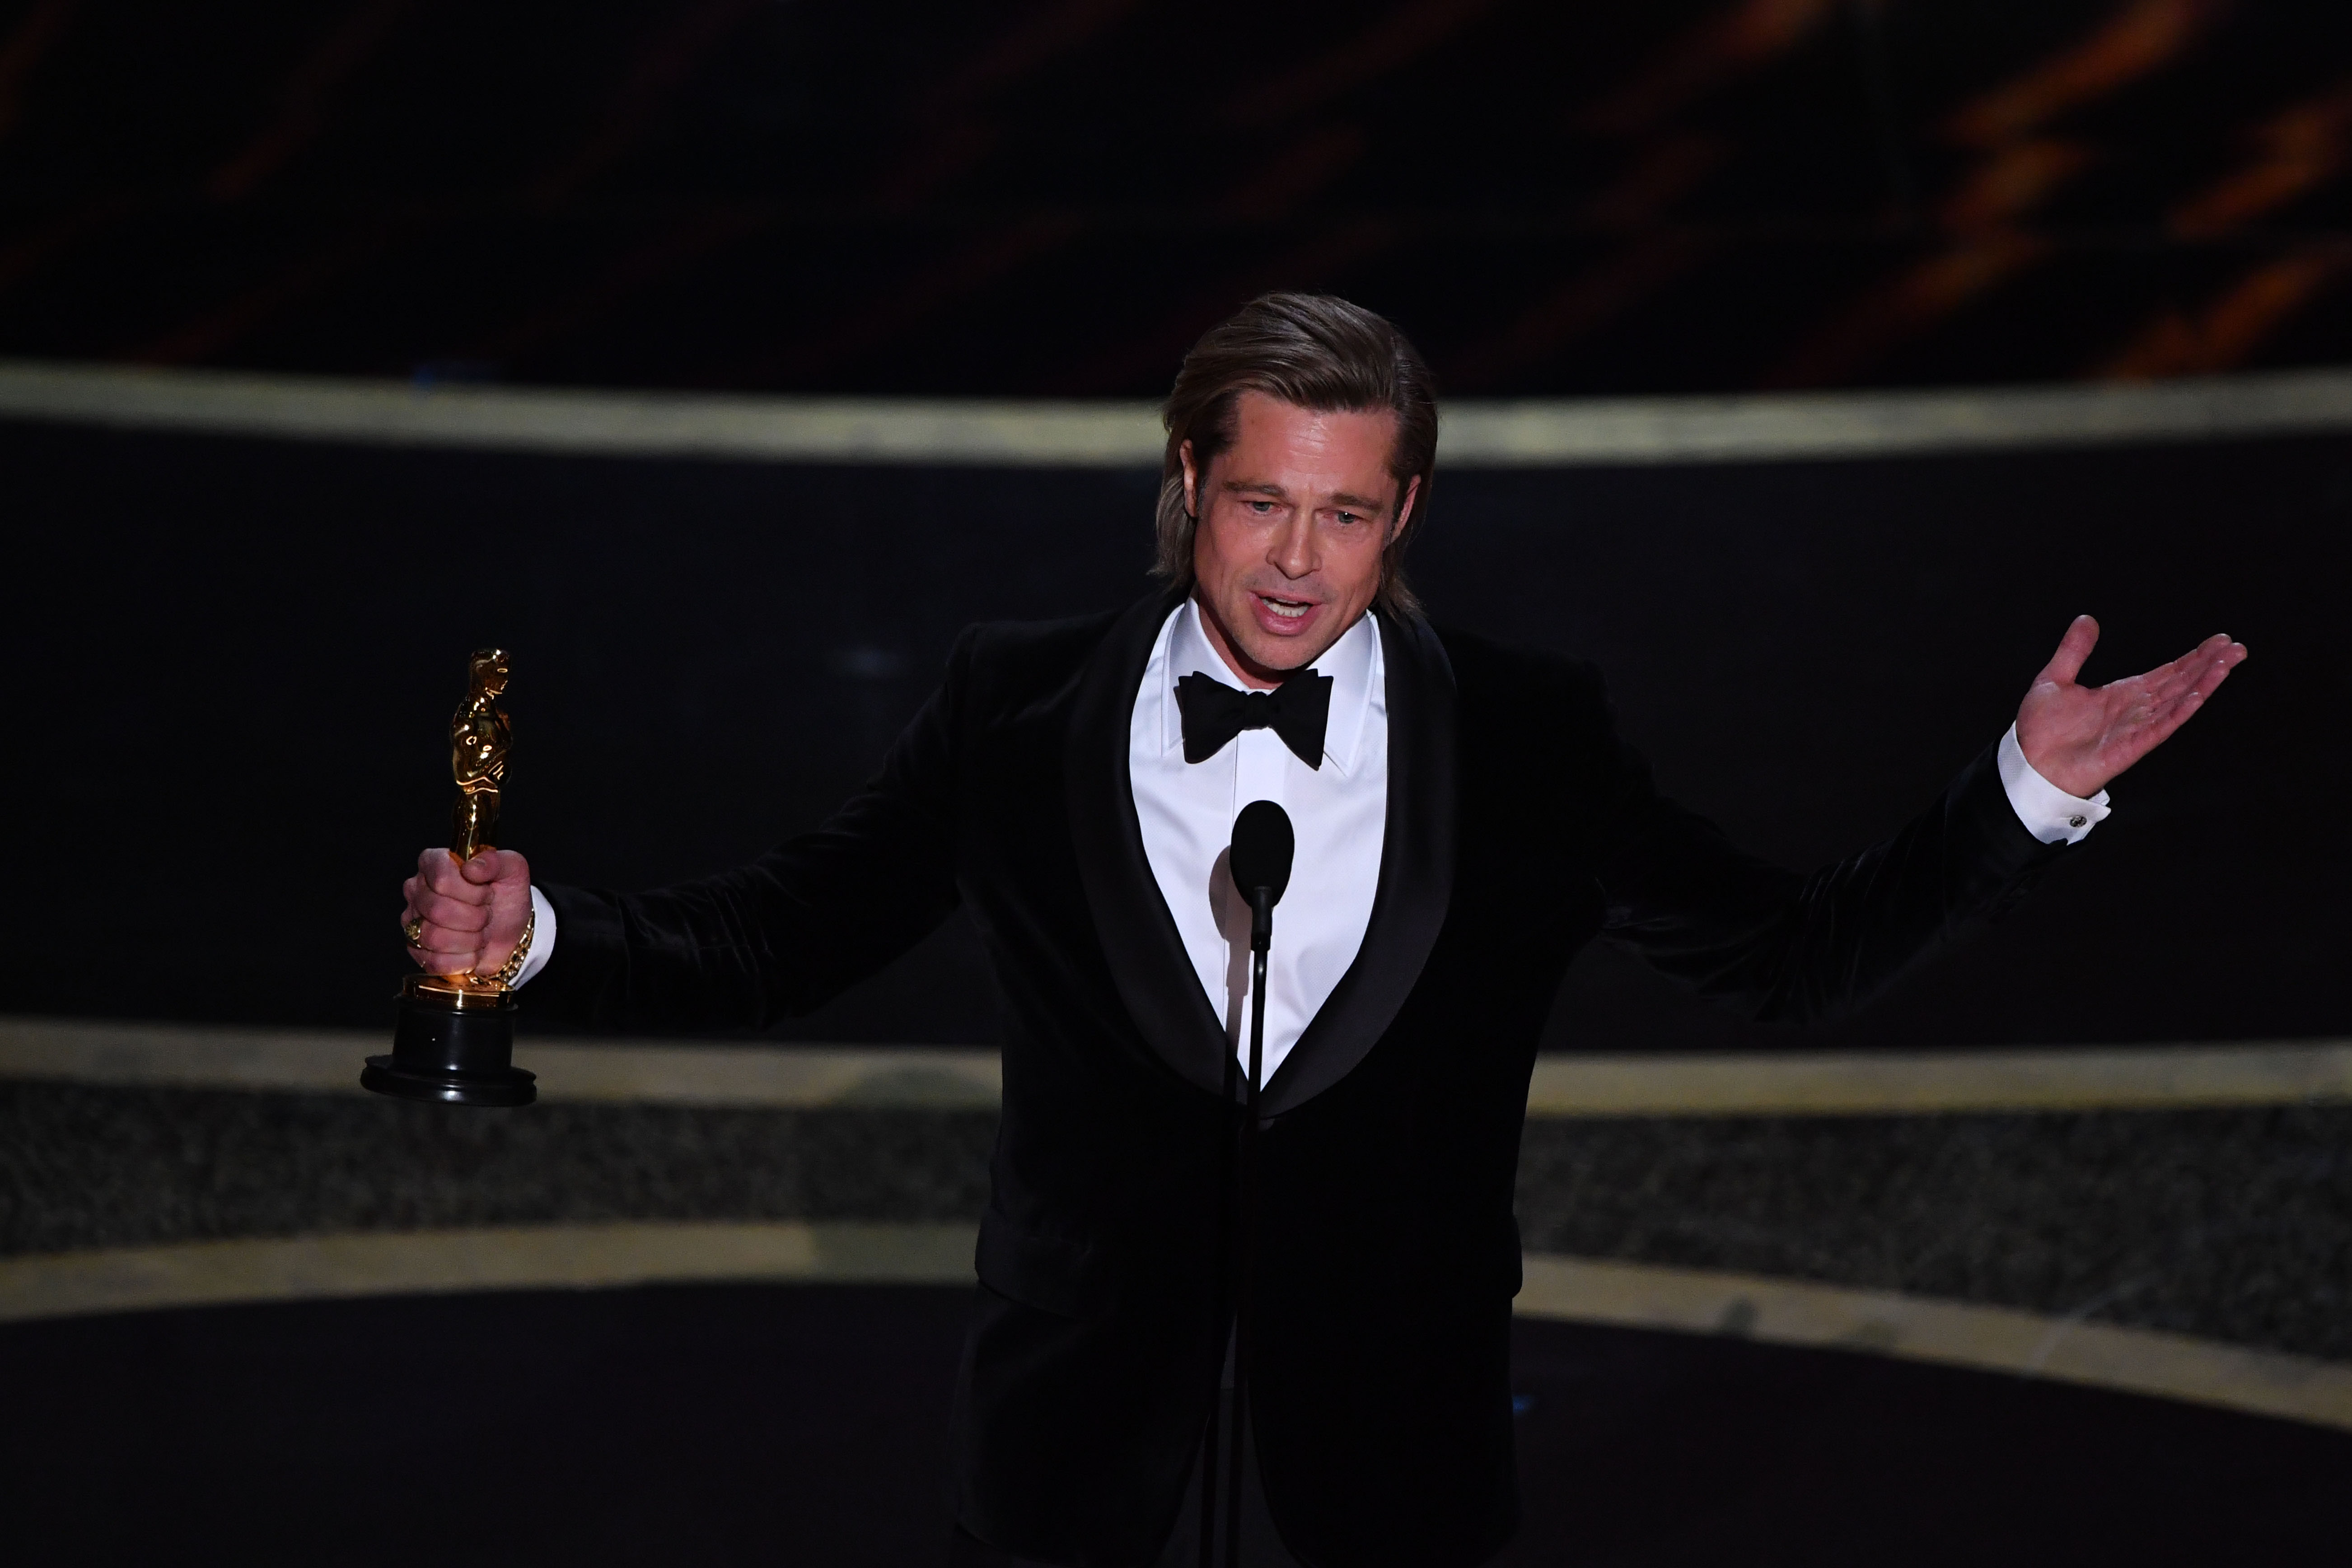 Brad Pitt gana con "Once Upon a Time..." su primer Óscar como actor. (Foto Prensa Libre: AFP)